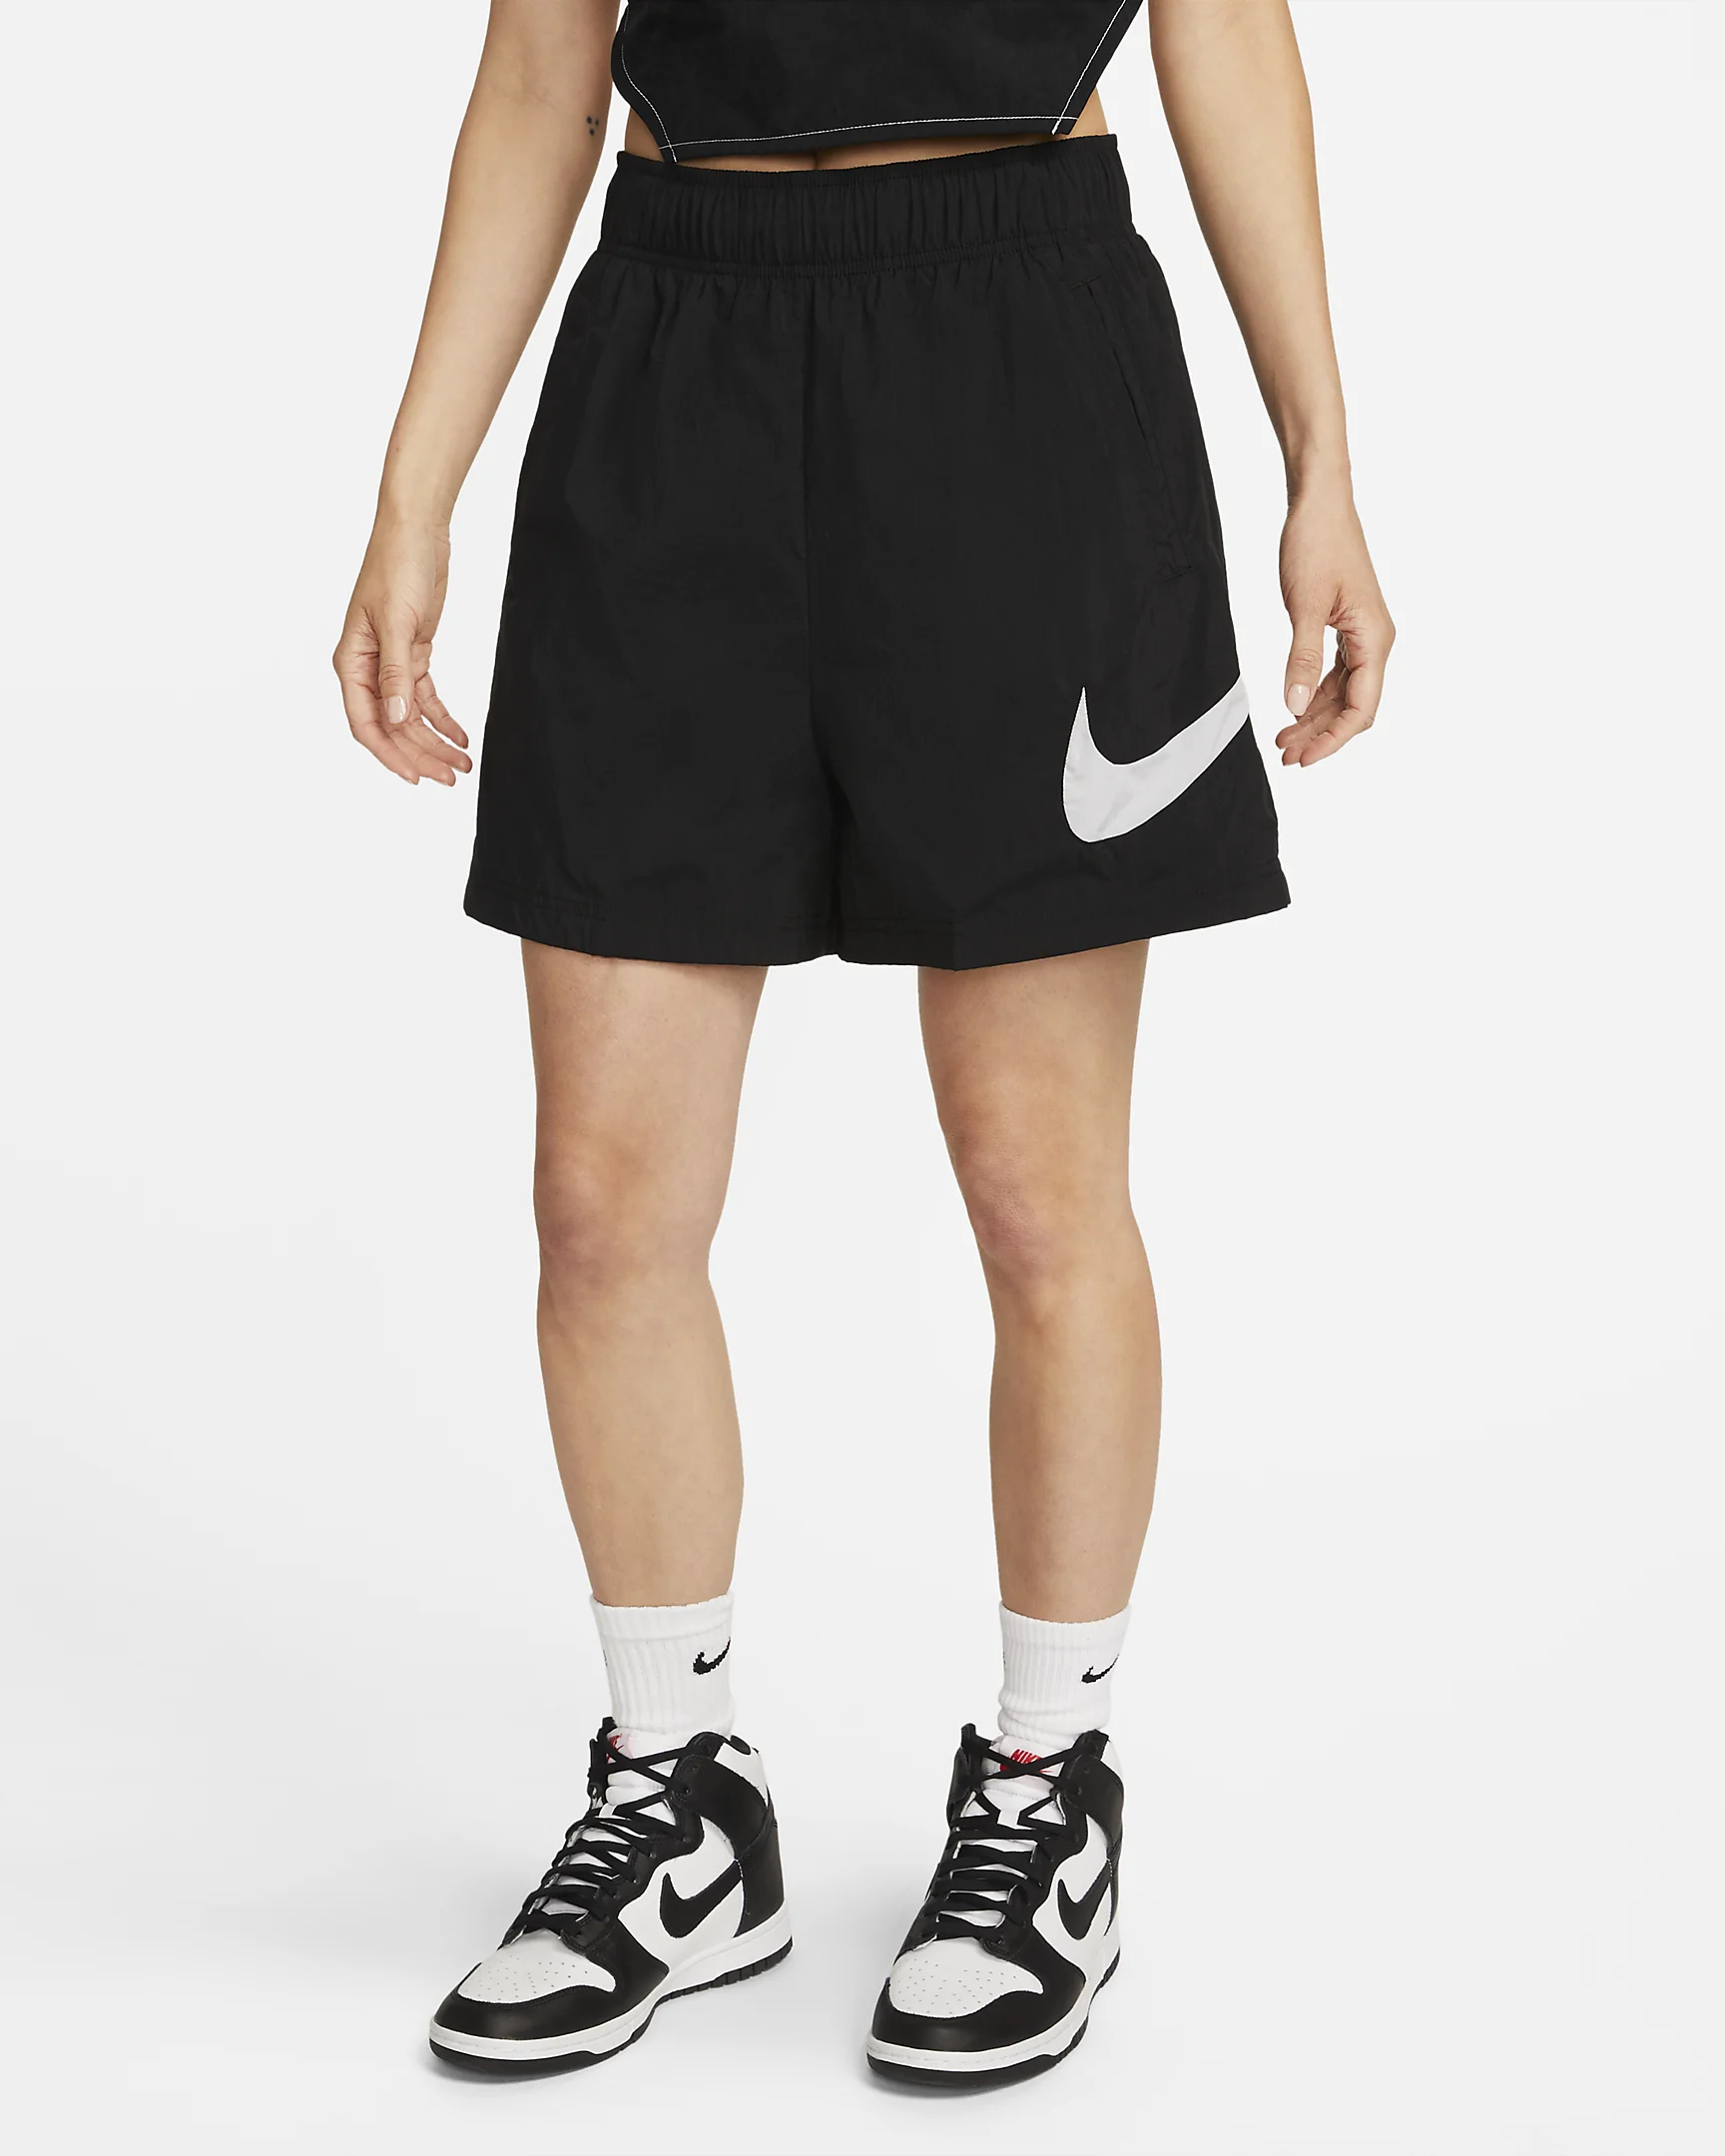 Cпортивные шорты женские Nike Essntl Wvn Hr Short Hbr DM6739-010 черные L